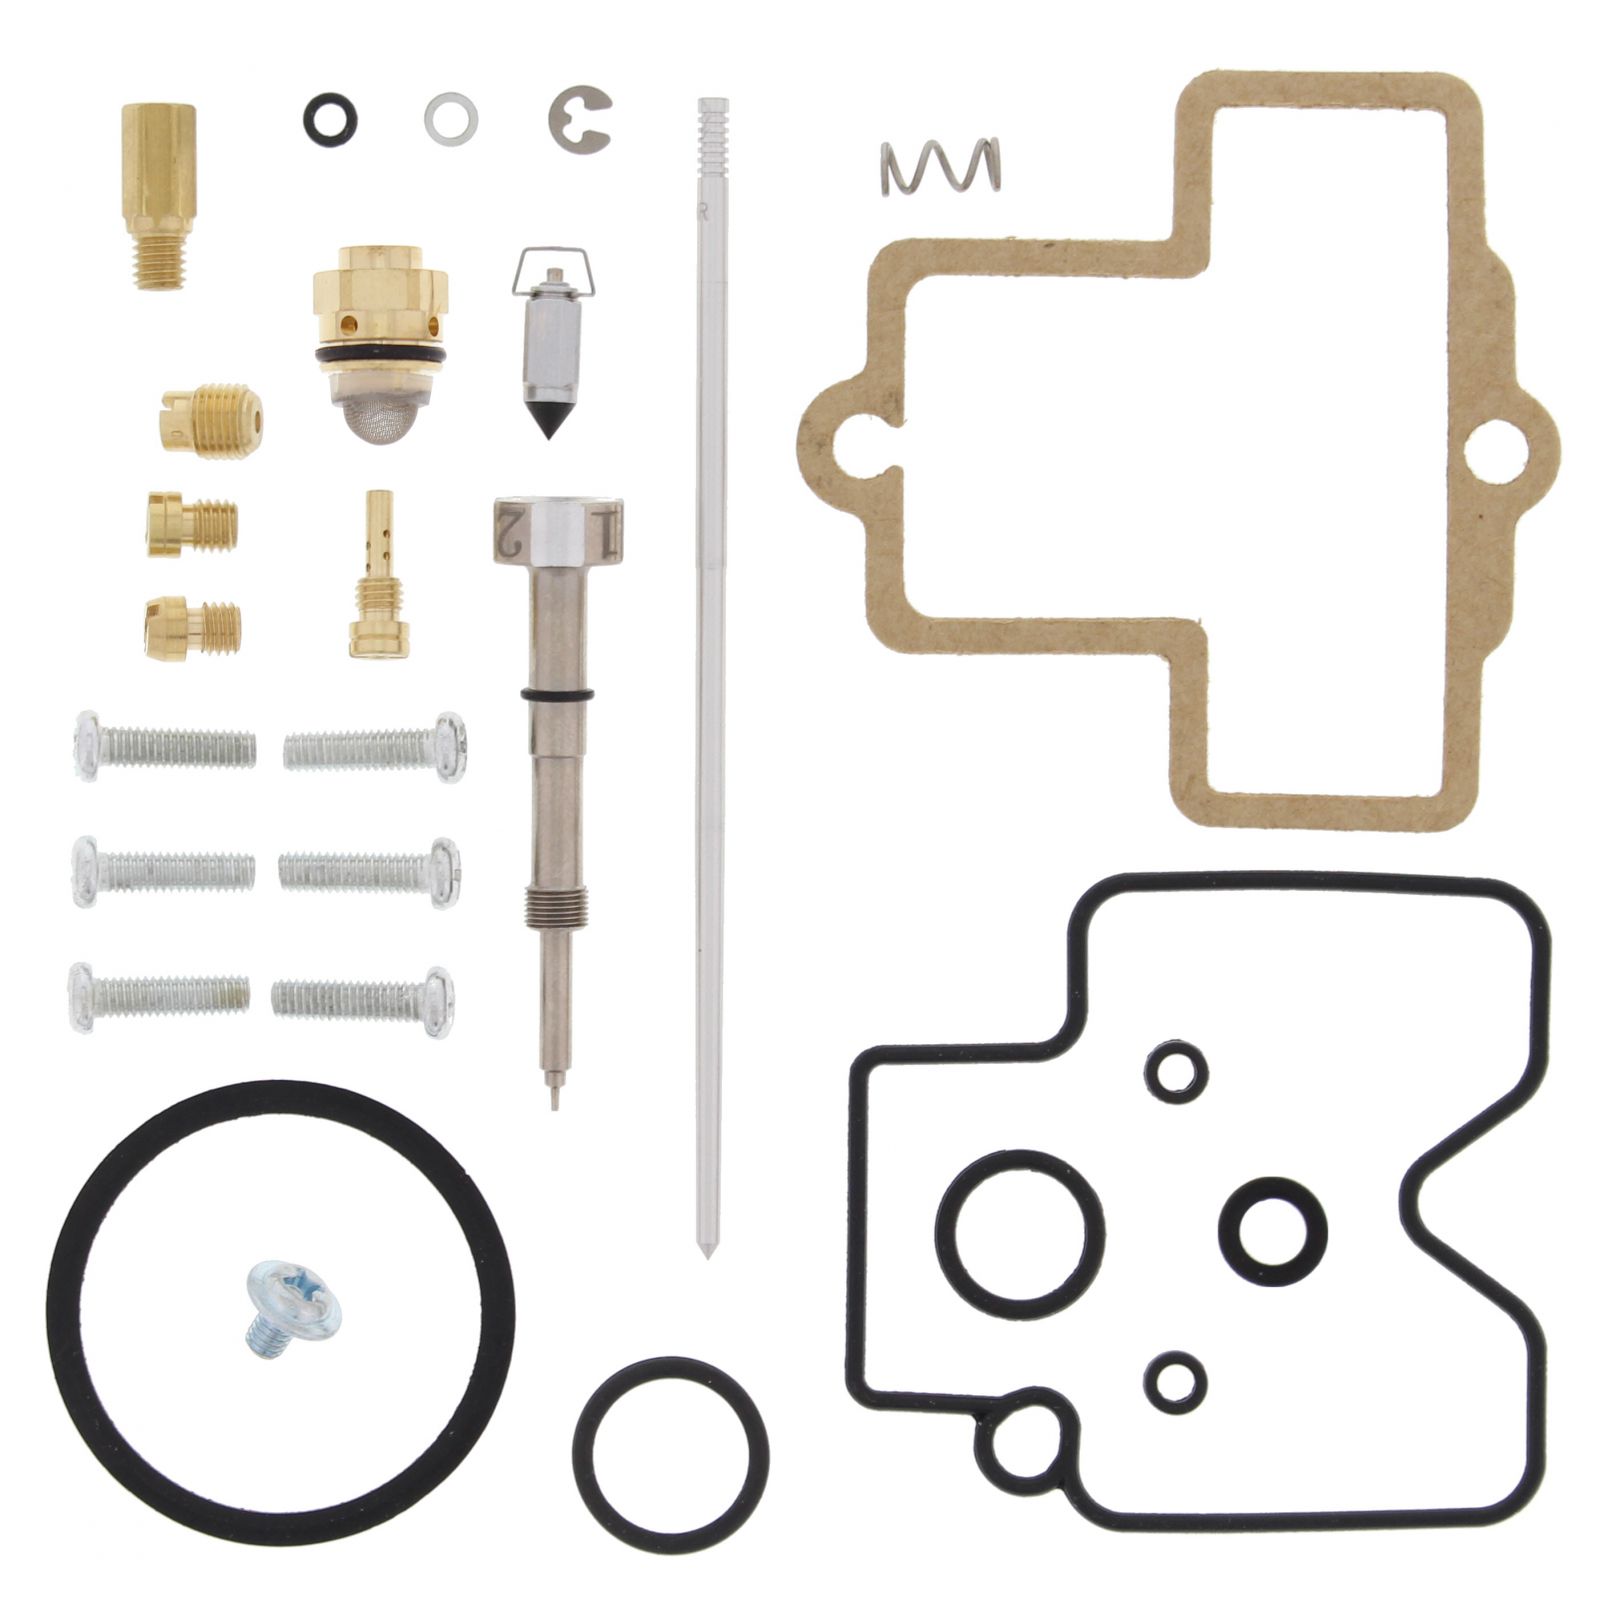 Wrp Carb Repair Kits - WRP261324 image